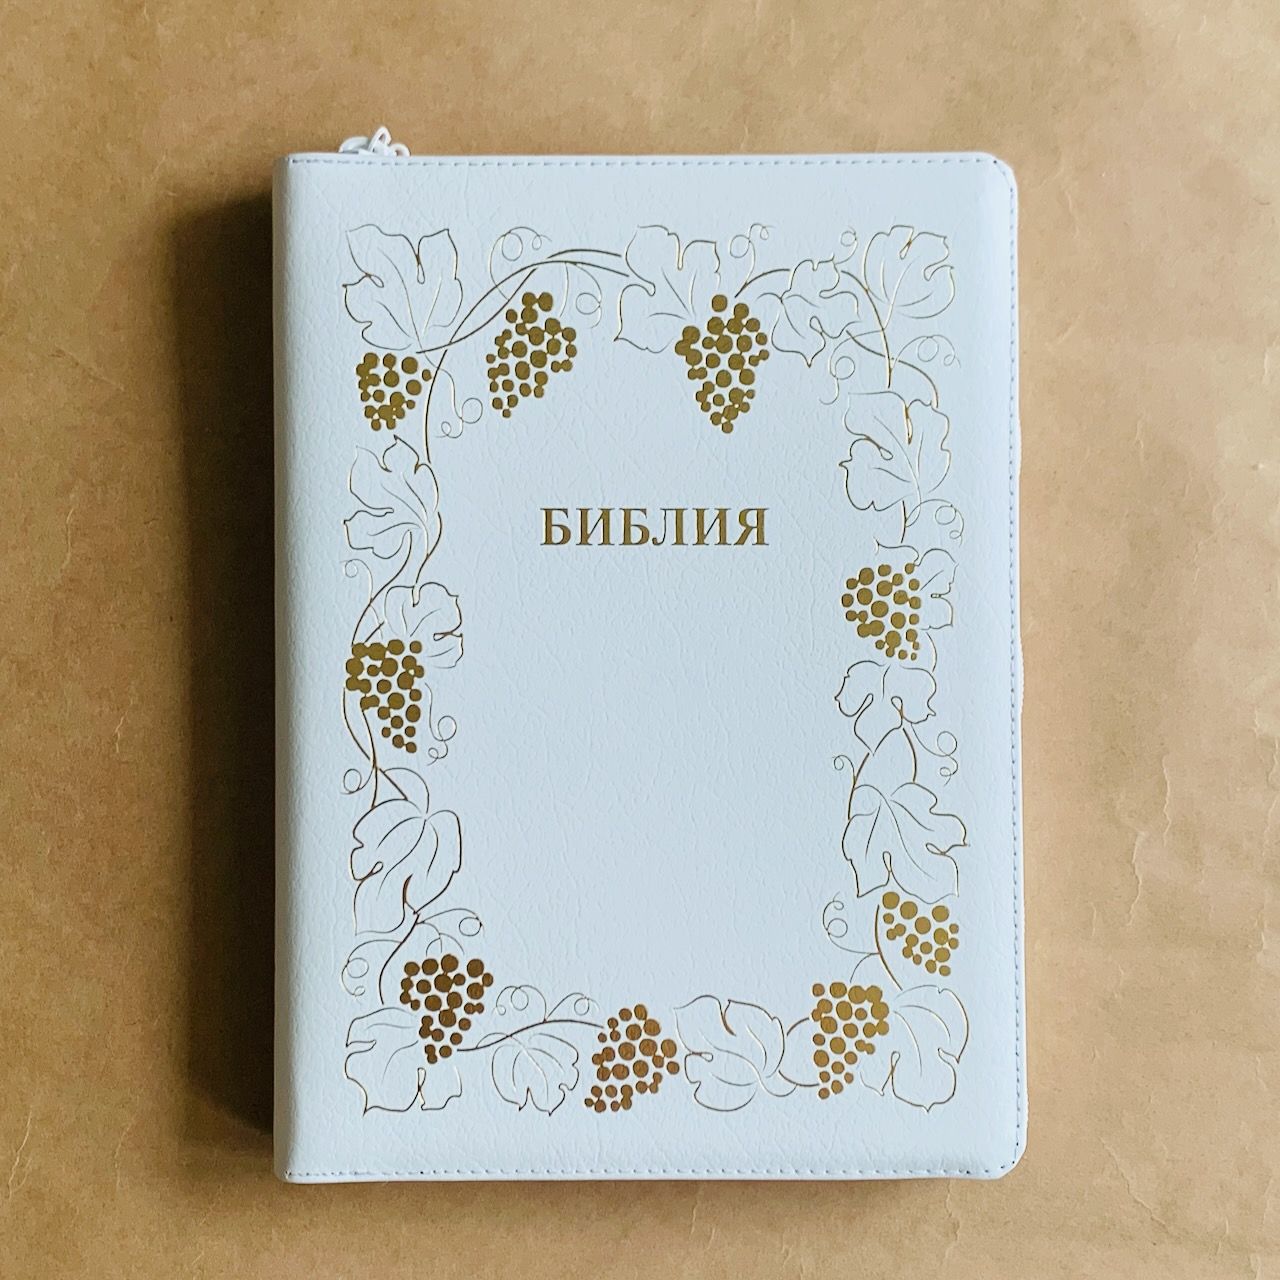 Библия 076z код B8, дизайн "золотая рамка с виноградной лозой", кожаный переплет на молнии, цвет белый пятнистый, размер 180x243 мм